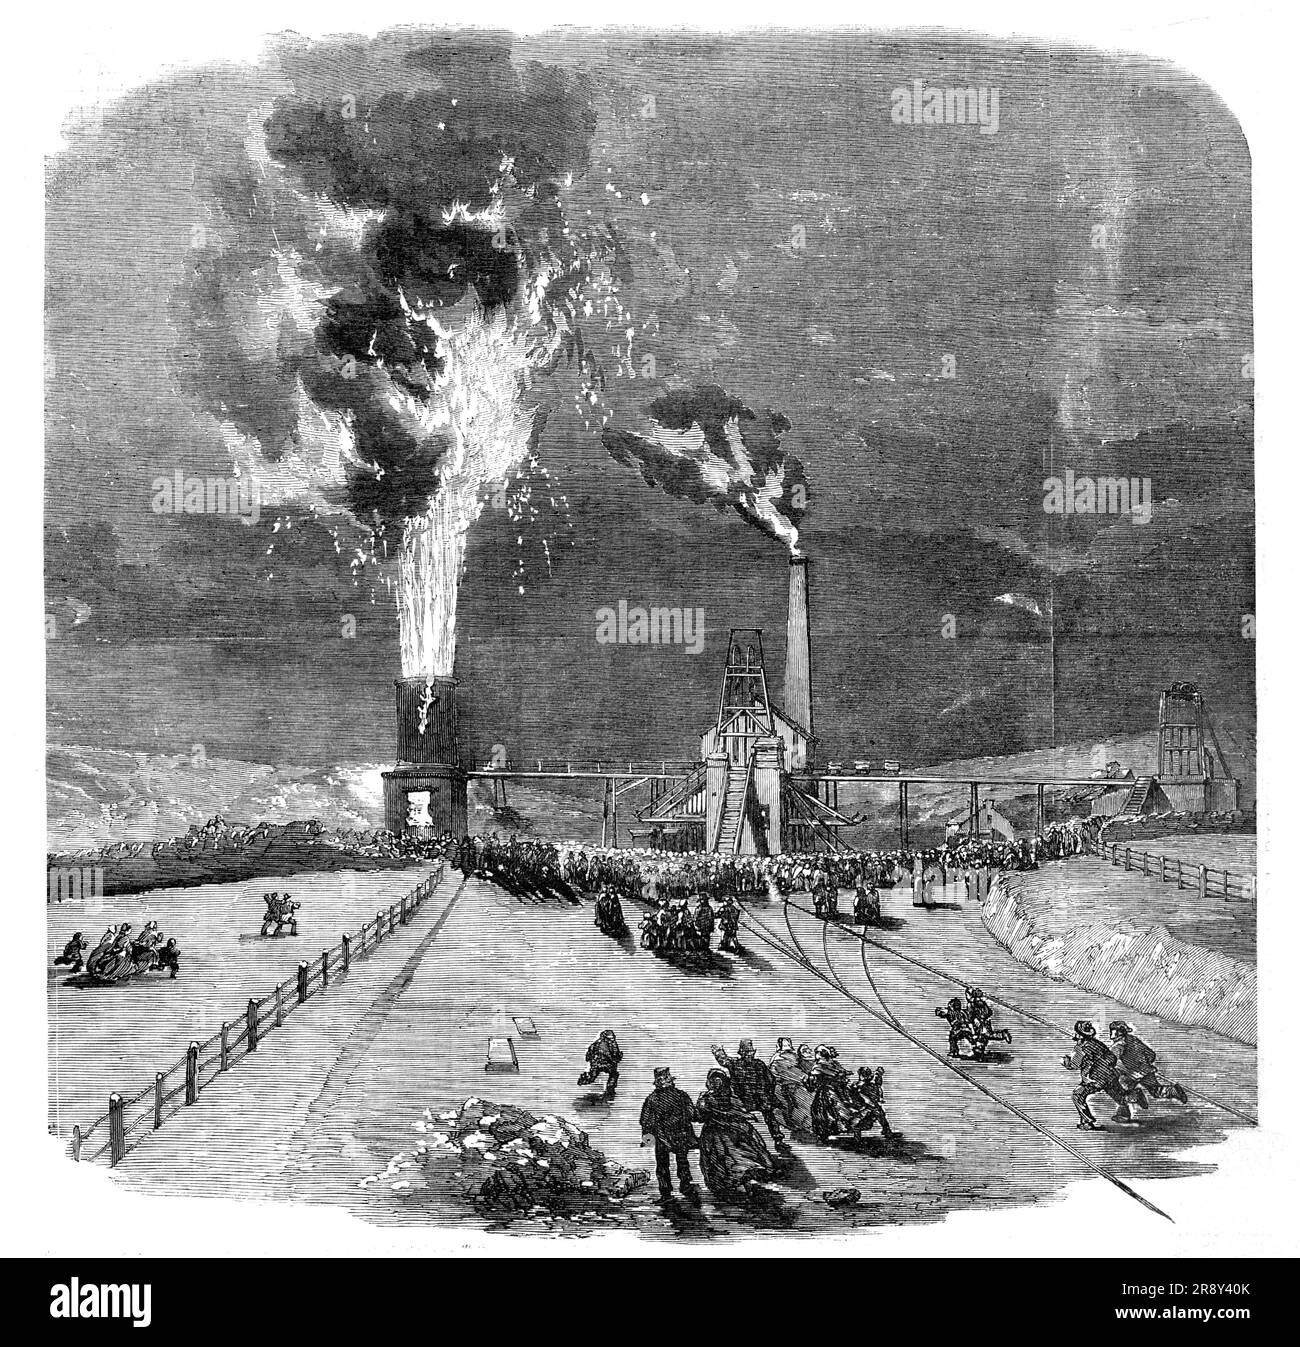 Die Explosion in Lund Hill Colliery, Barnsley, 1857. Eine Katastrophe in einer Kohlemine der South Yorkshire Railway, die Taylor und Co. Gehört „...eine furchtbare Explosion geschah, die den Boden über große Entfernungen erschütterte... das Innere der Grube wurde durch die Explosion in Brand gesetzt, und die Flammen breiteten sich so schnell aus, dass sie jede Chance verhinderten, den Teil der Grube zu erreichen, wo der Rest der Männer war (Ca. 170) sollten sein... die Flammen, die den Luftschacht aufsteigen, 220 Meter tief, erreichten mehr als 20 Meter über der Spitze, und erleuchteten das Land über eine Entfernung Webster g Stockfoto